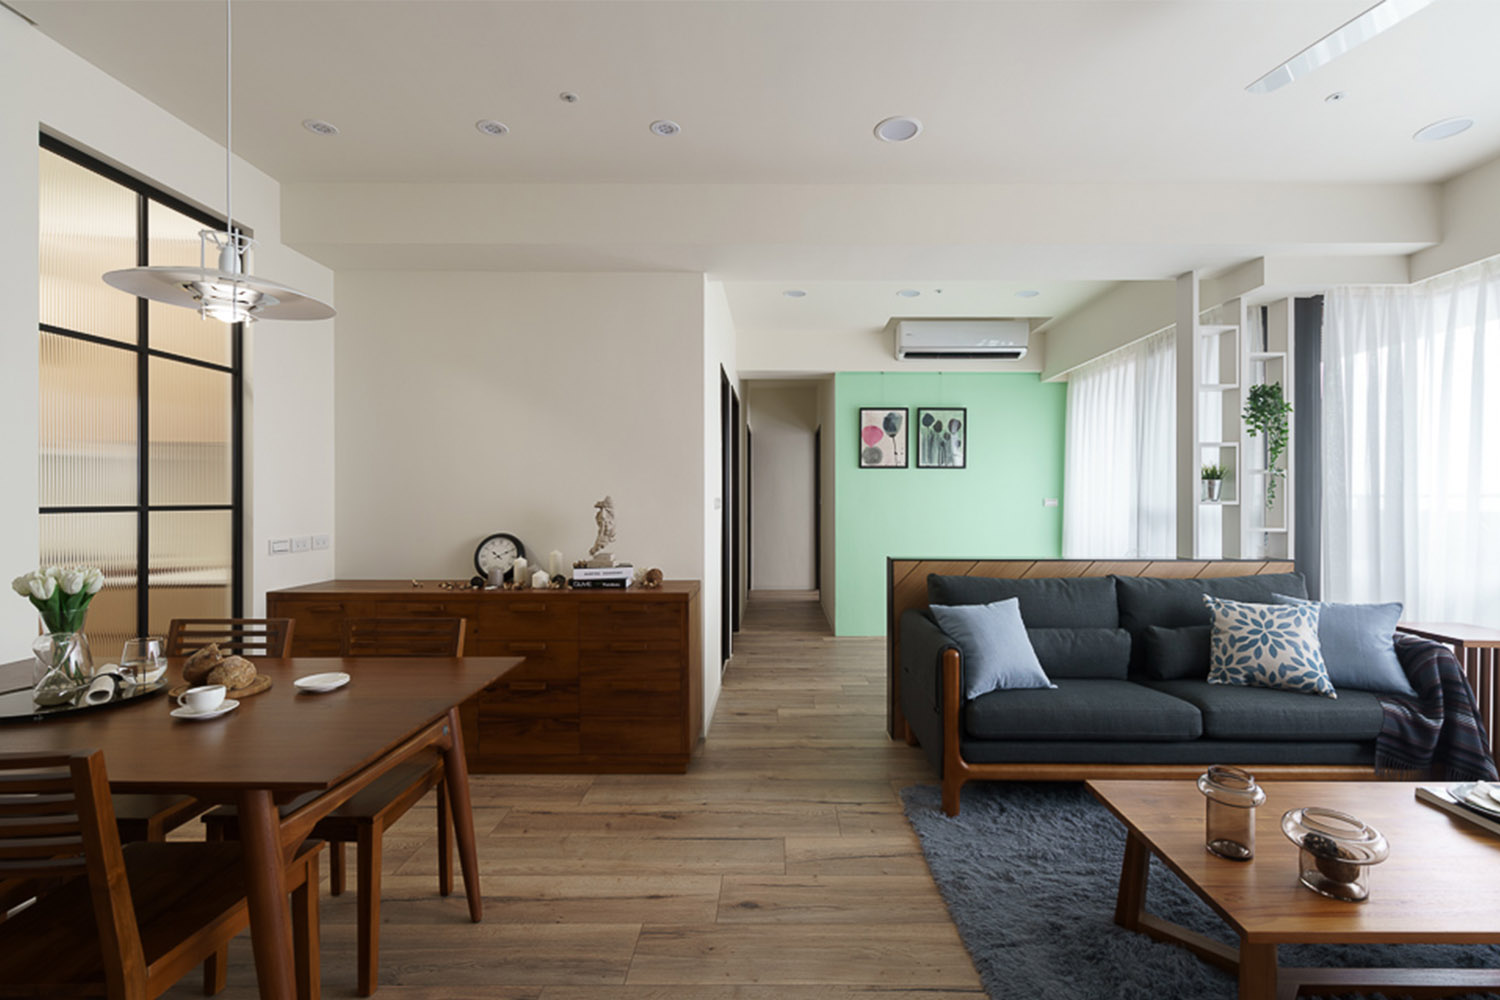 簡約北歐風格客廳裝潢搭配實木家具